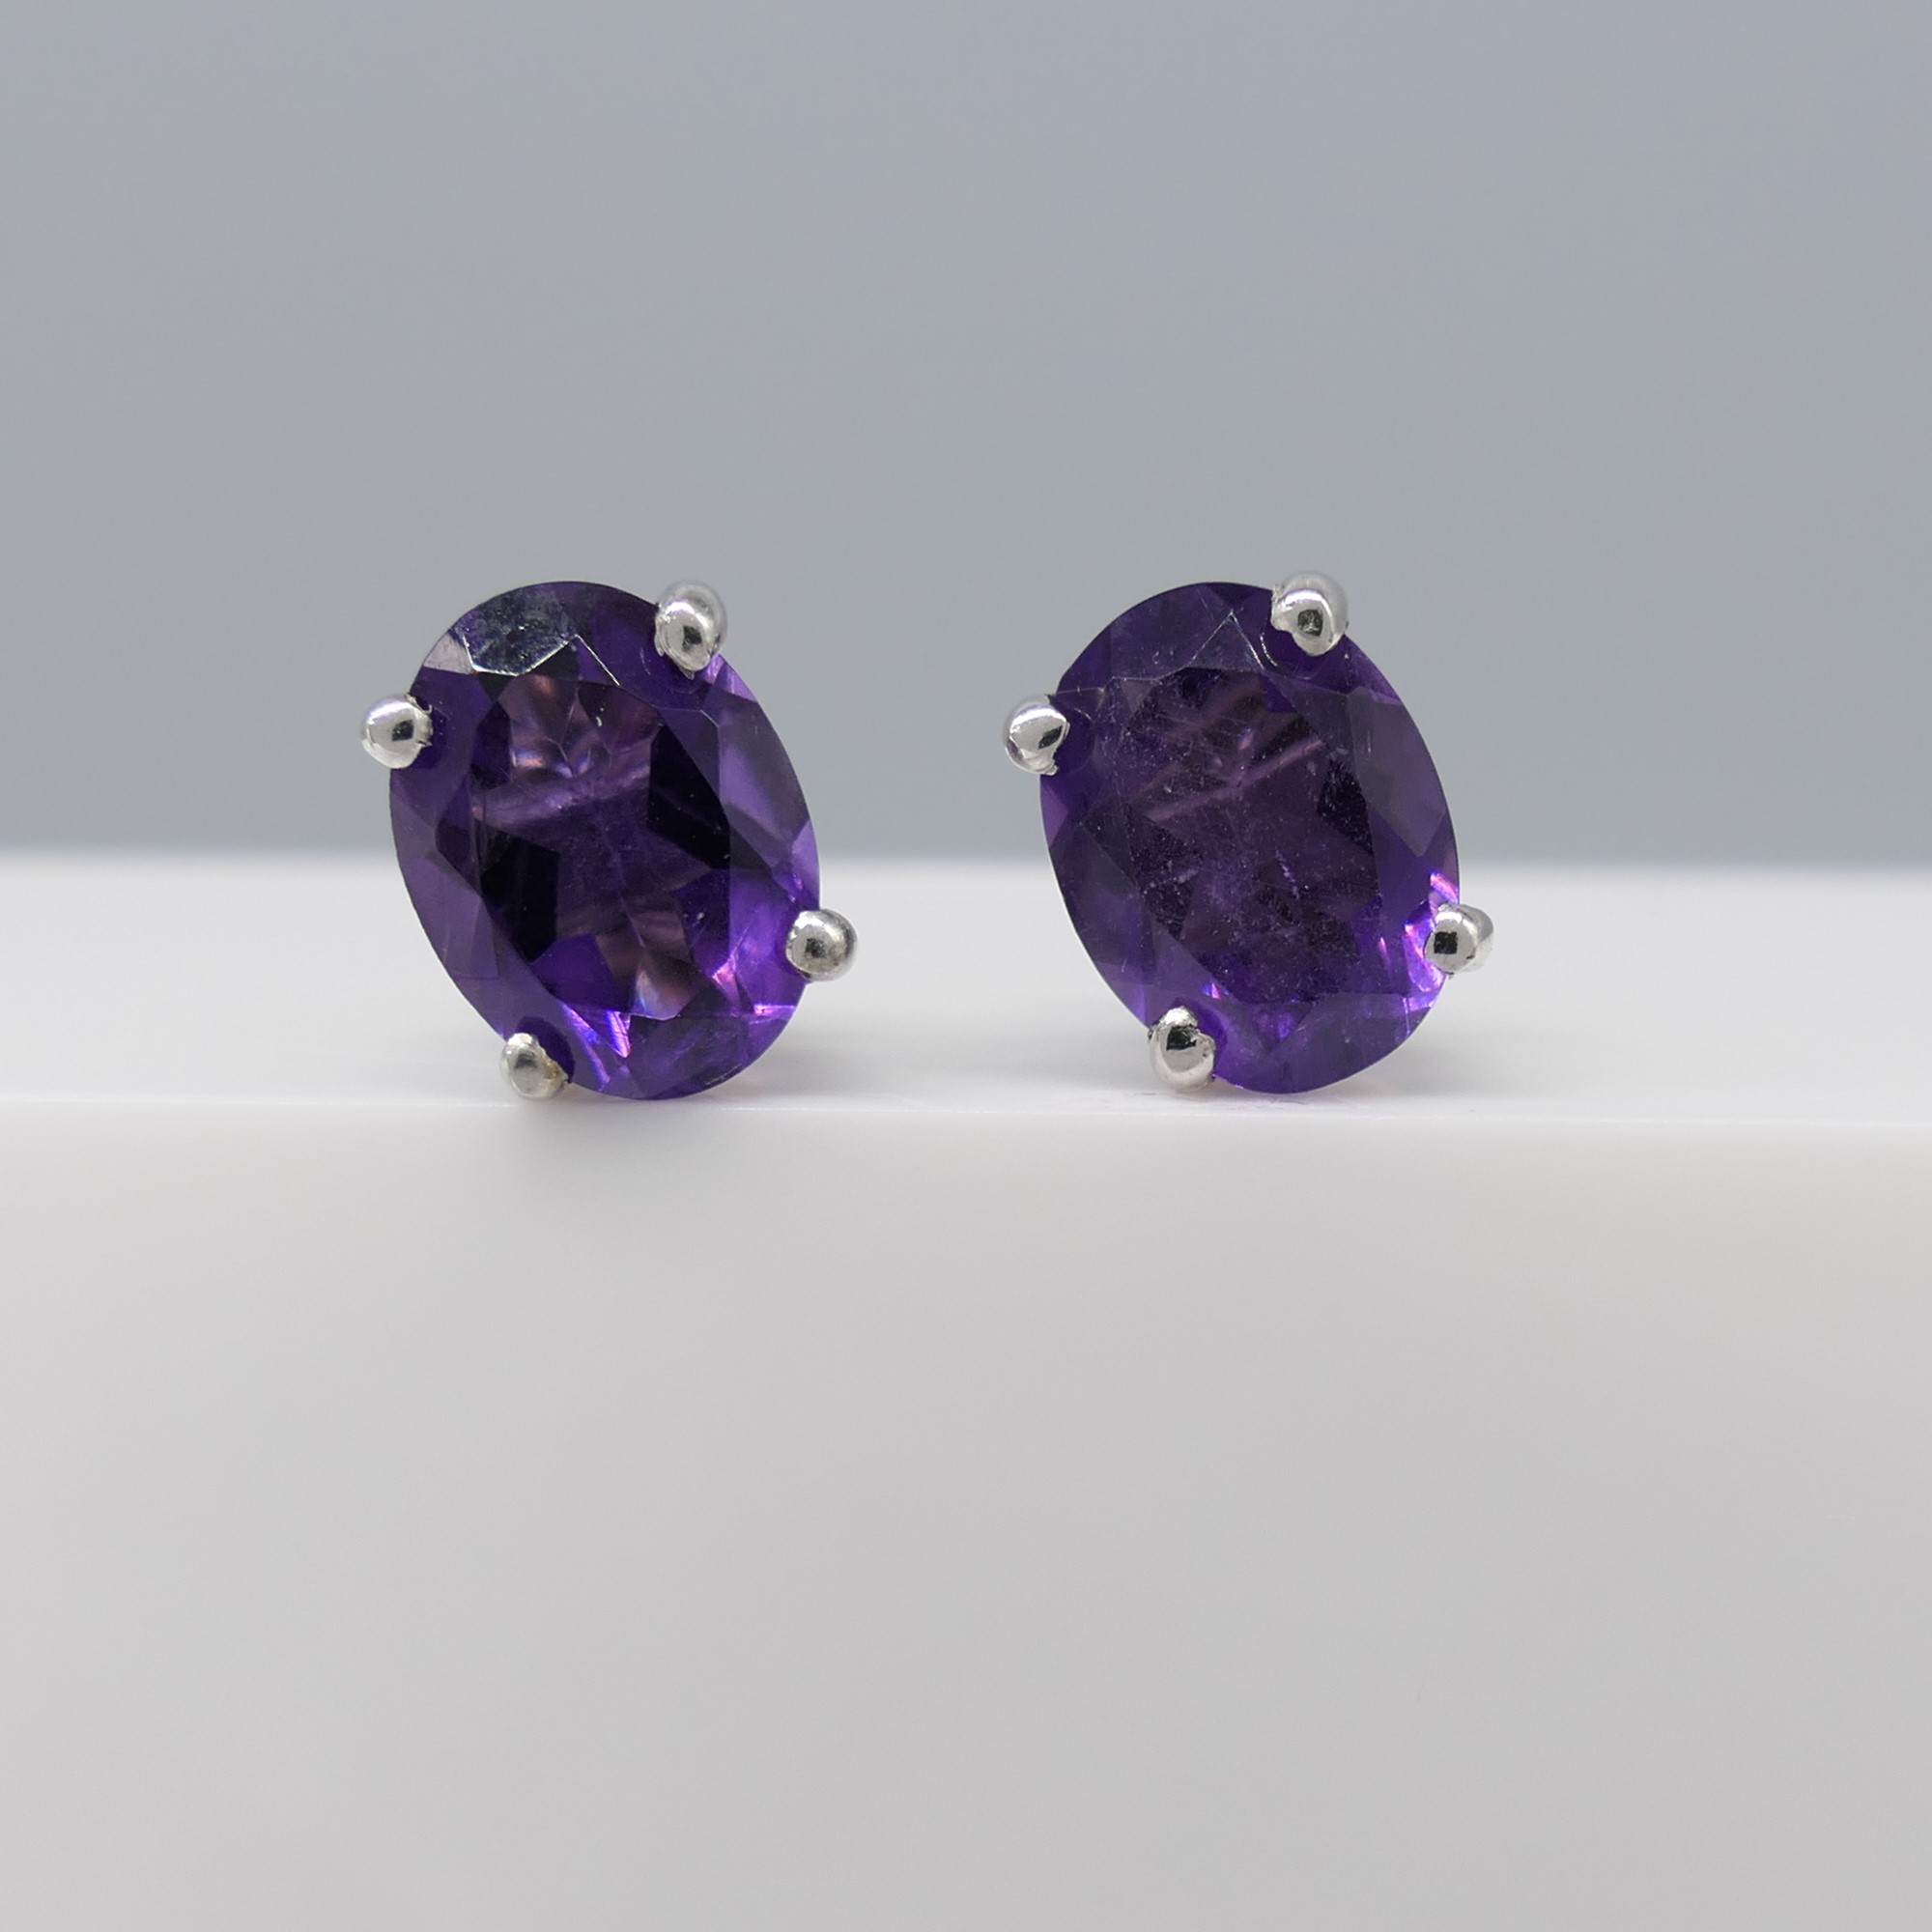 Pair of natural purple amethyst gemstone ear studs in silver